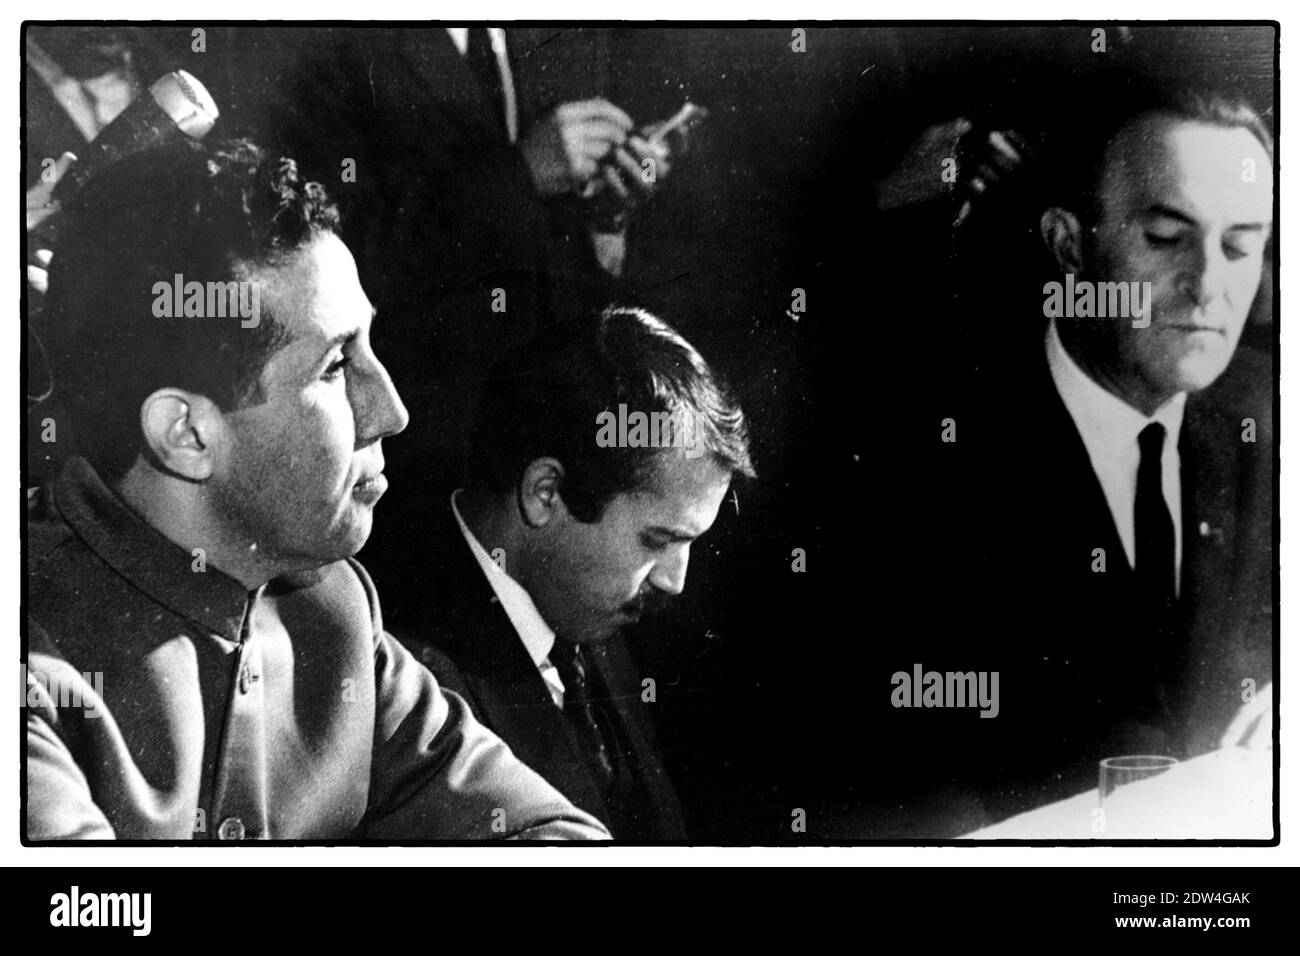 Photo sans date (probablement 1963) du jeune ministre algérien des Affaires étrangères Abdelaziz Bouteflika (au centre) à côté du premier président Ahmed Ben Bella (à gauche). Photo de Balkis Press/ABACAPRESS.COM Banque D'Images